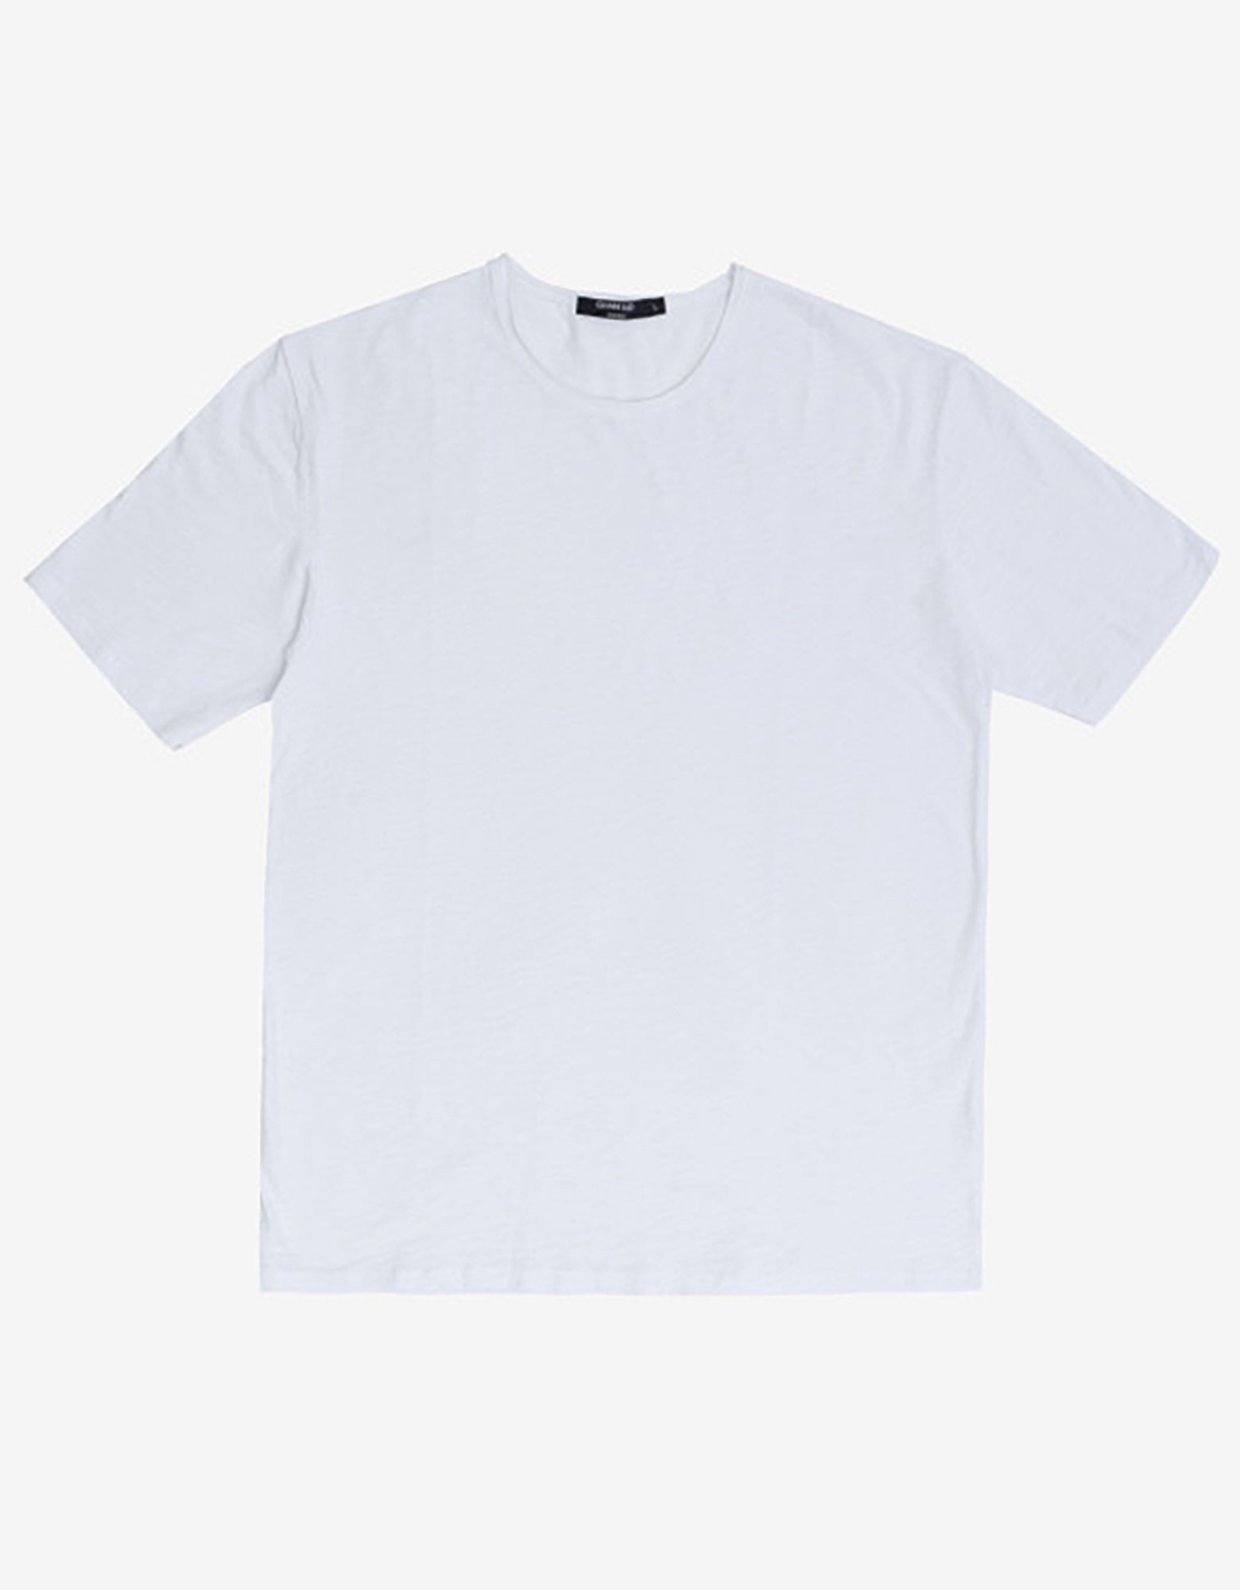 Gianni Lupo T-shirt white